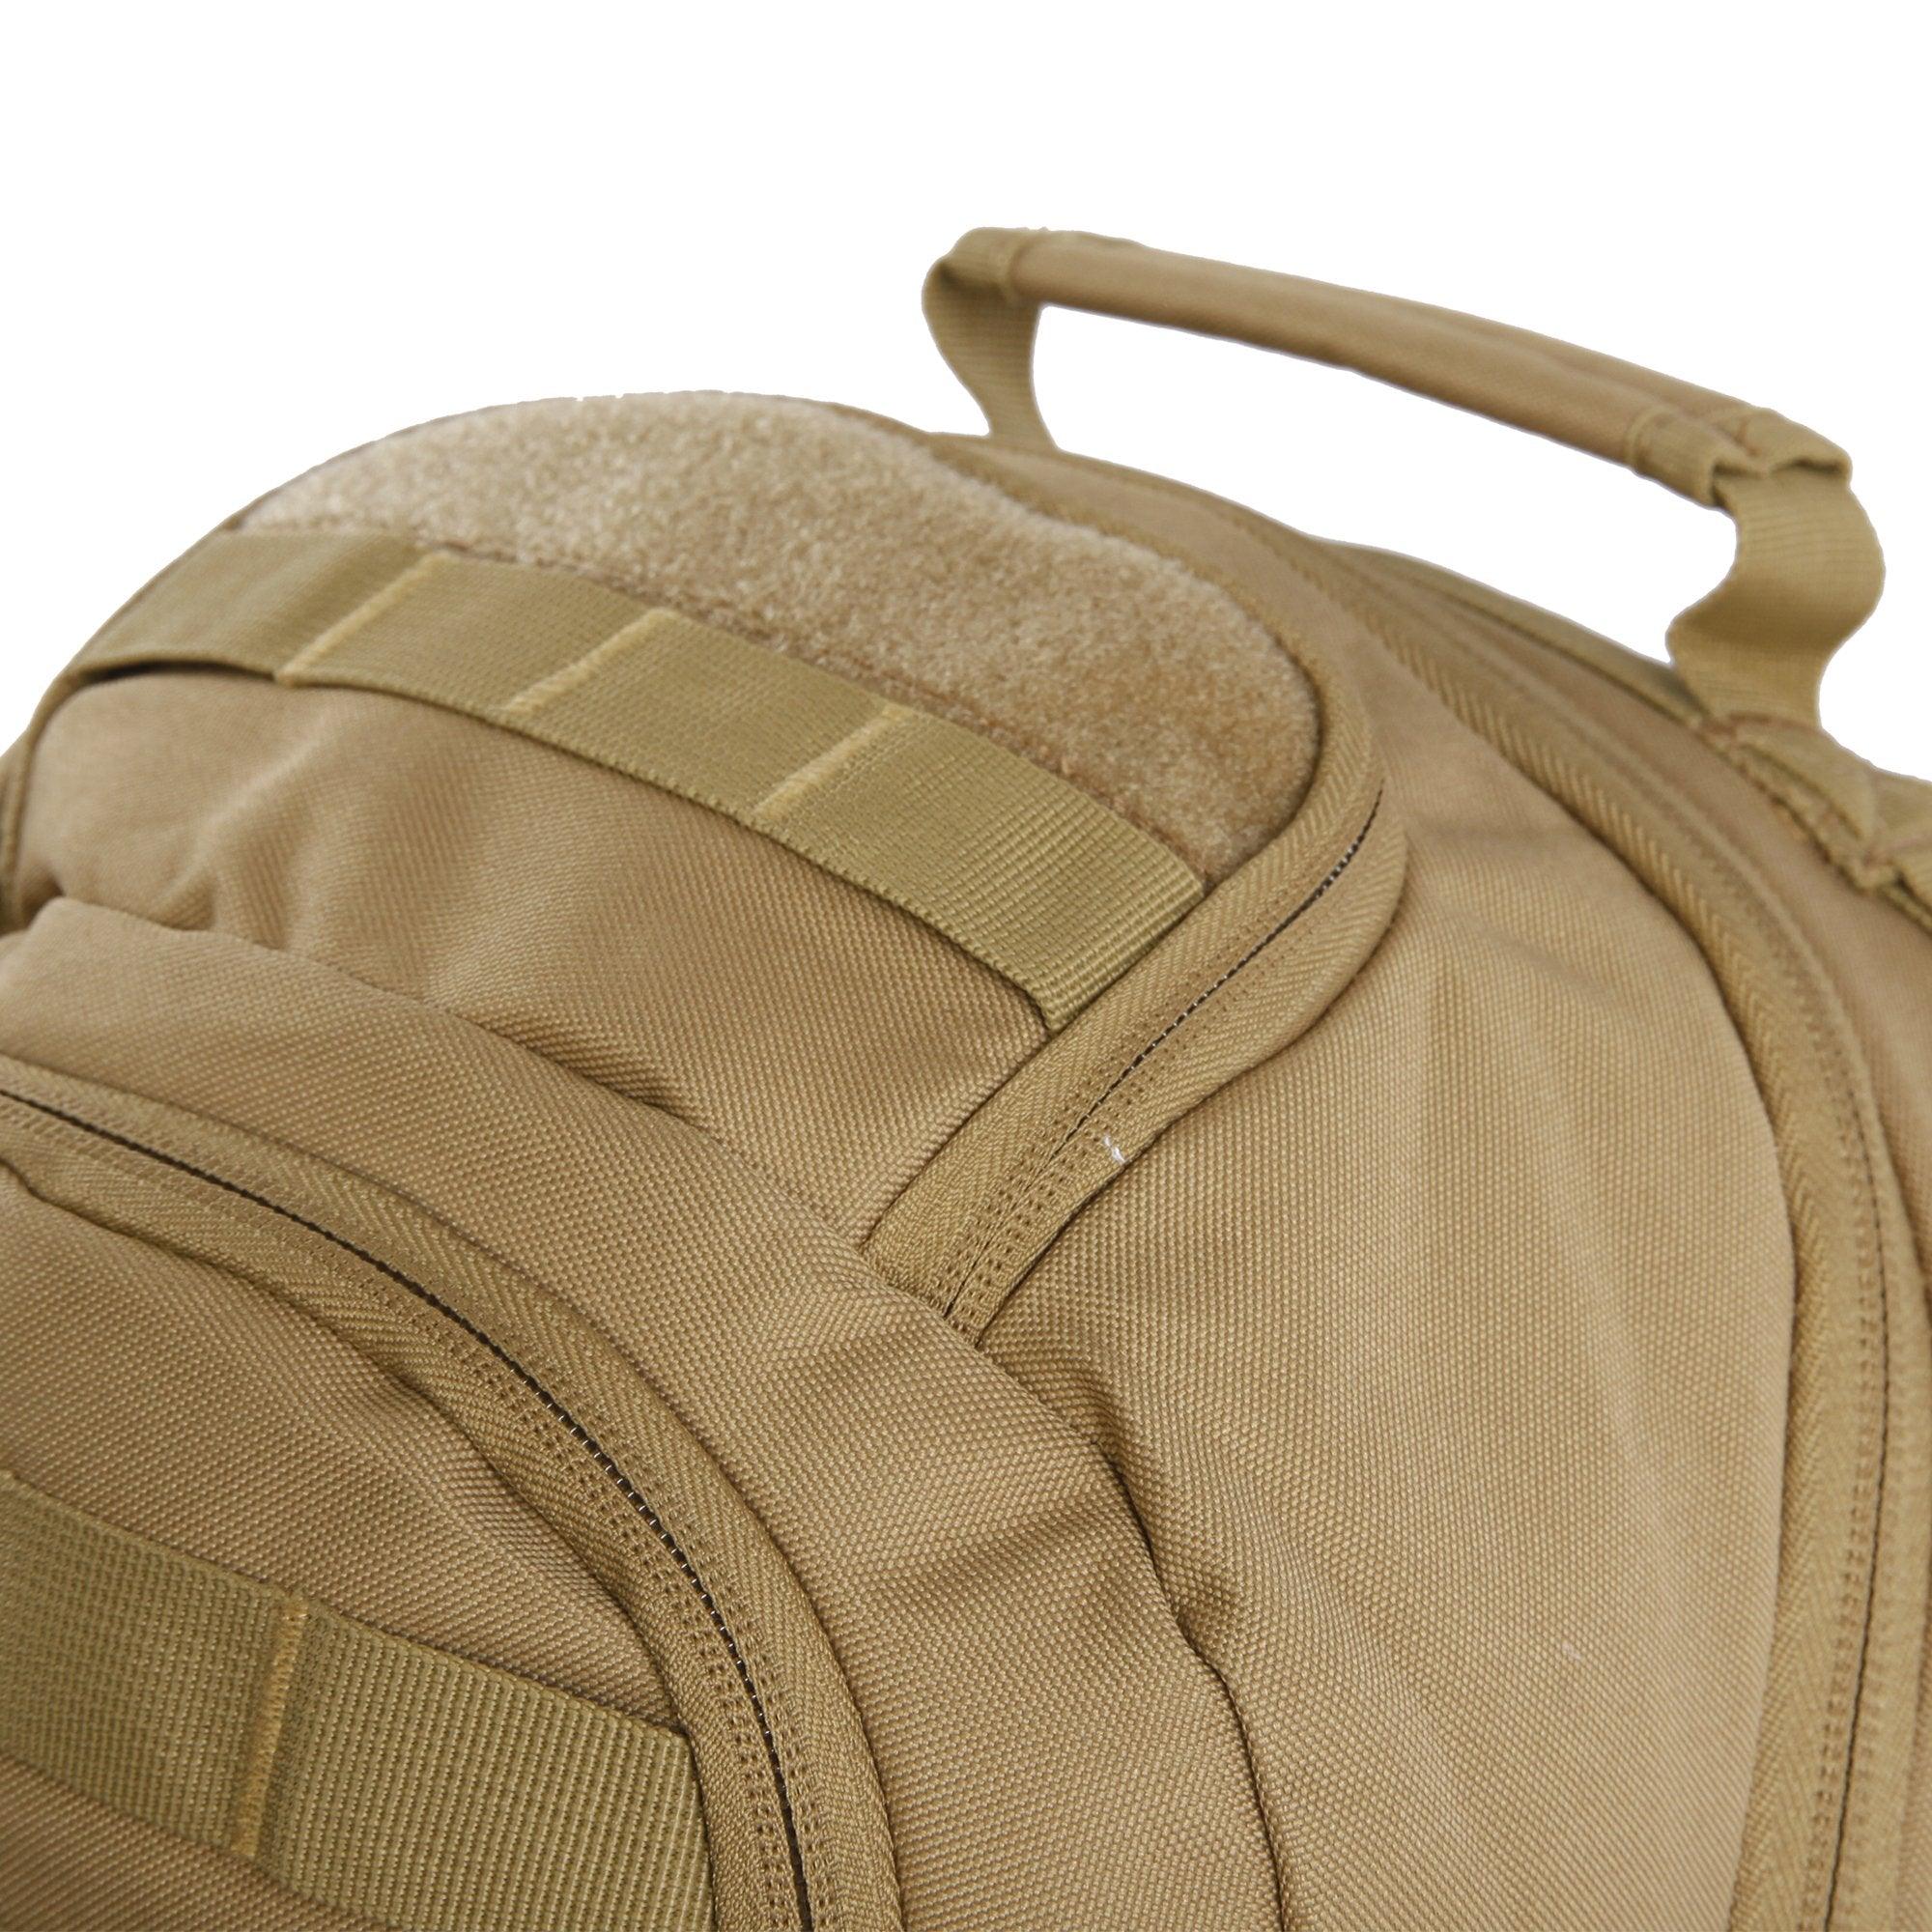 SOG Barrage Tactical Internal Frame Backpack, 64.3-Liter Storage, Black